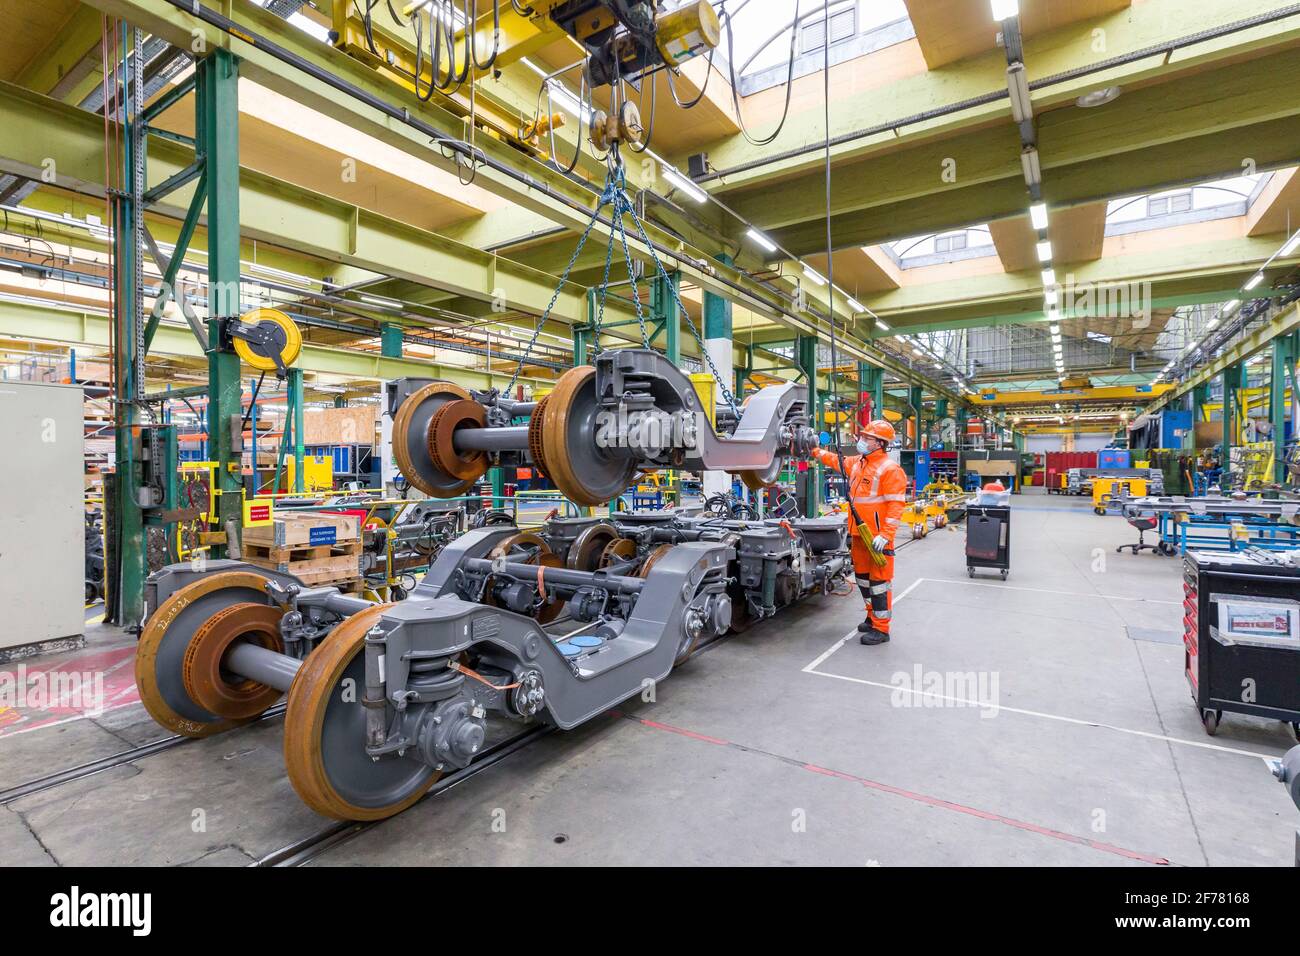 Frankreich, Indre et Loire, Saint-Pierre-des-Corps, SNCF Technicenter, das Industrietechnikcenter von Saint-Pierre-des-Corps, ist spezialisiert auf die komplette Renovierung von S-Bahnen in der Region Île de France, die ihre Lebensdauer verdoppelt, 650 Mitarbeiter aus rund 40 Gewerken arbeiten auf diesem 14 ha großen Gelände Stockfoto